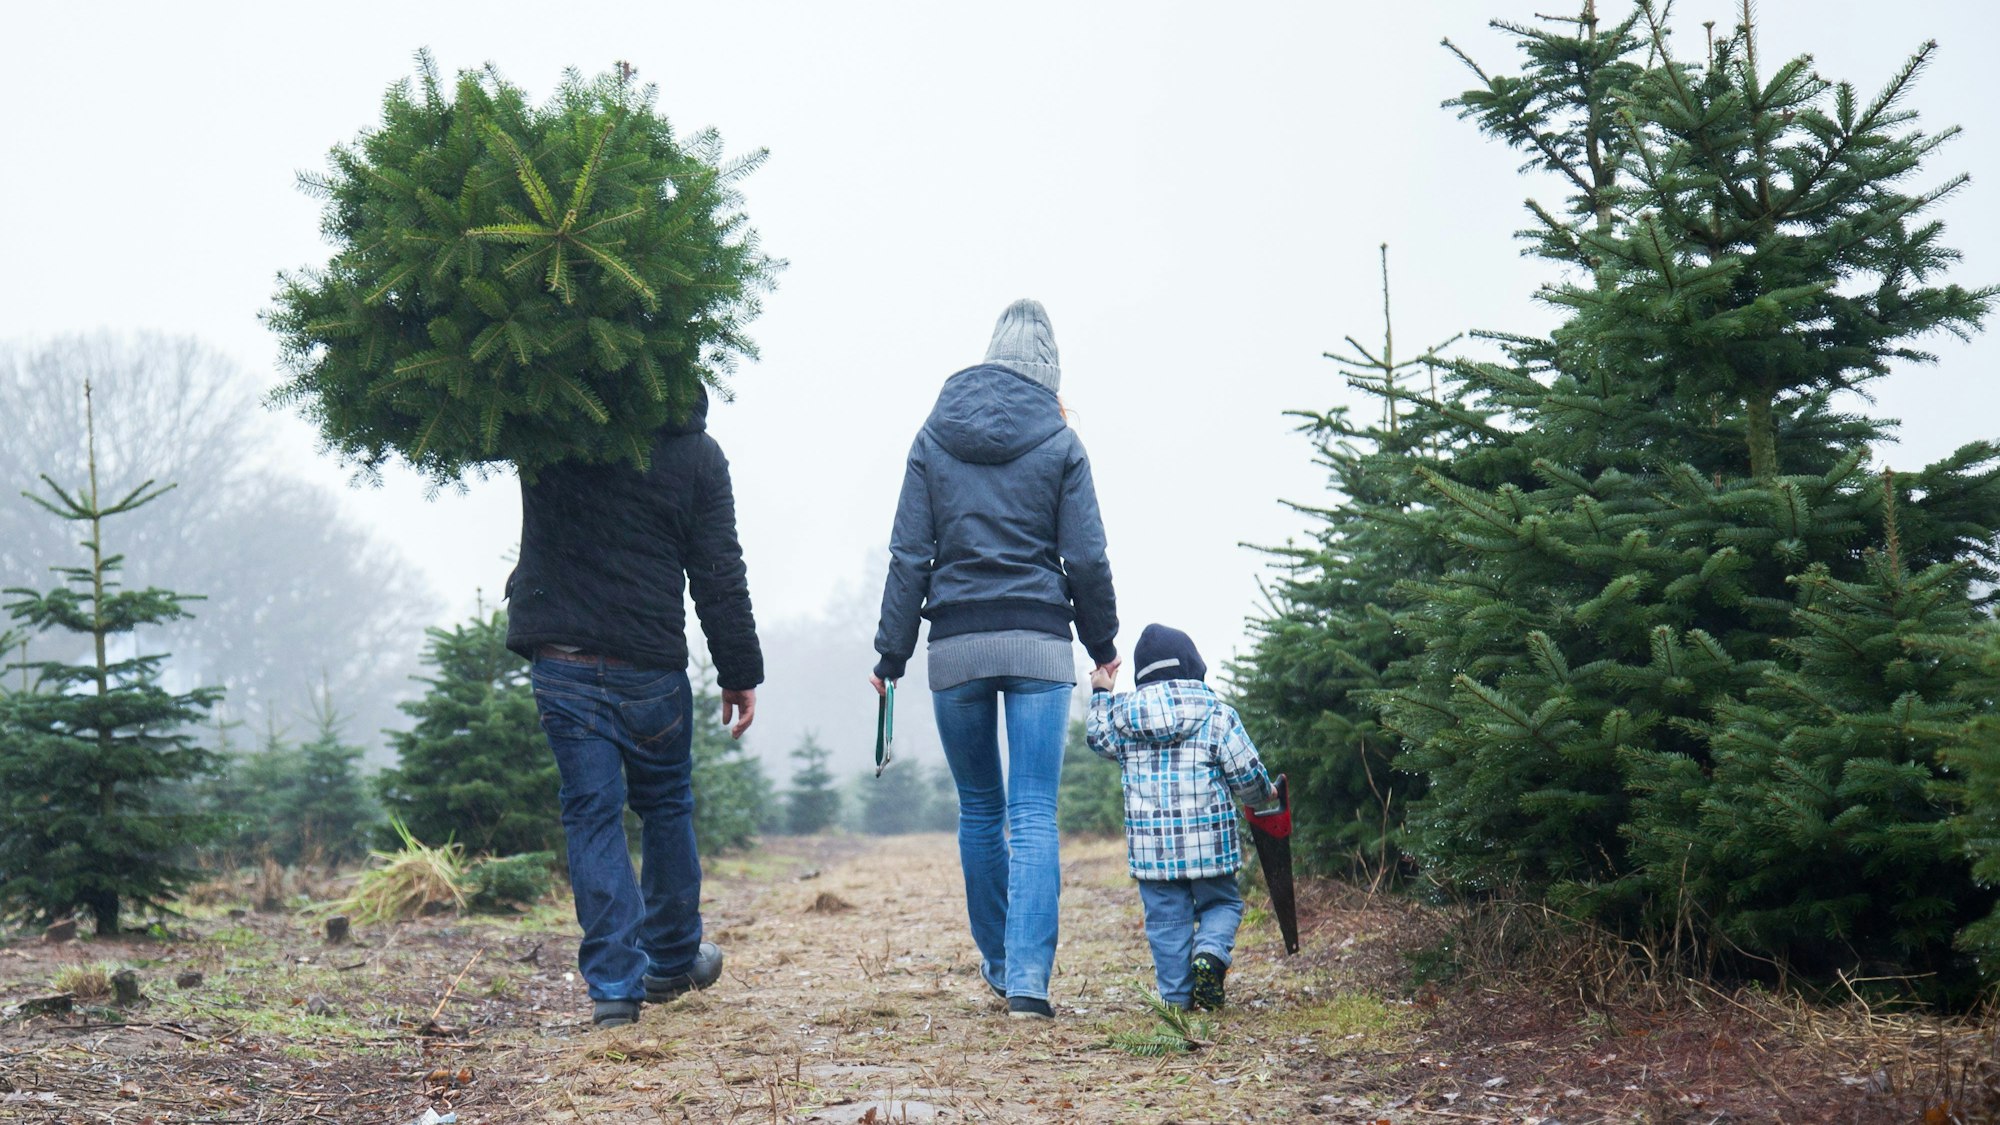 Drei Personen, eine mit einem Kind an der Hand, das eine Säge festhält, laufen zwischen Reihen von Tannenbäumen entlang. Eine Person trägt einen geschlagenen Baum auf der Schulter.